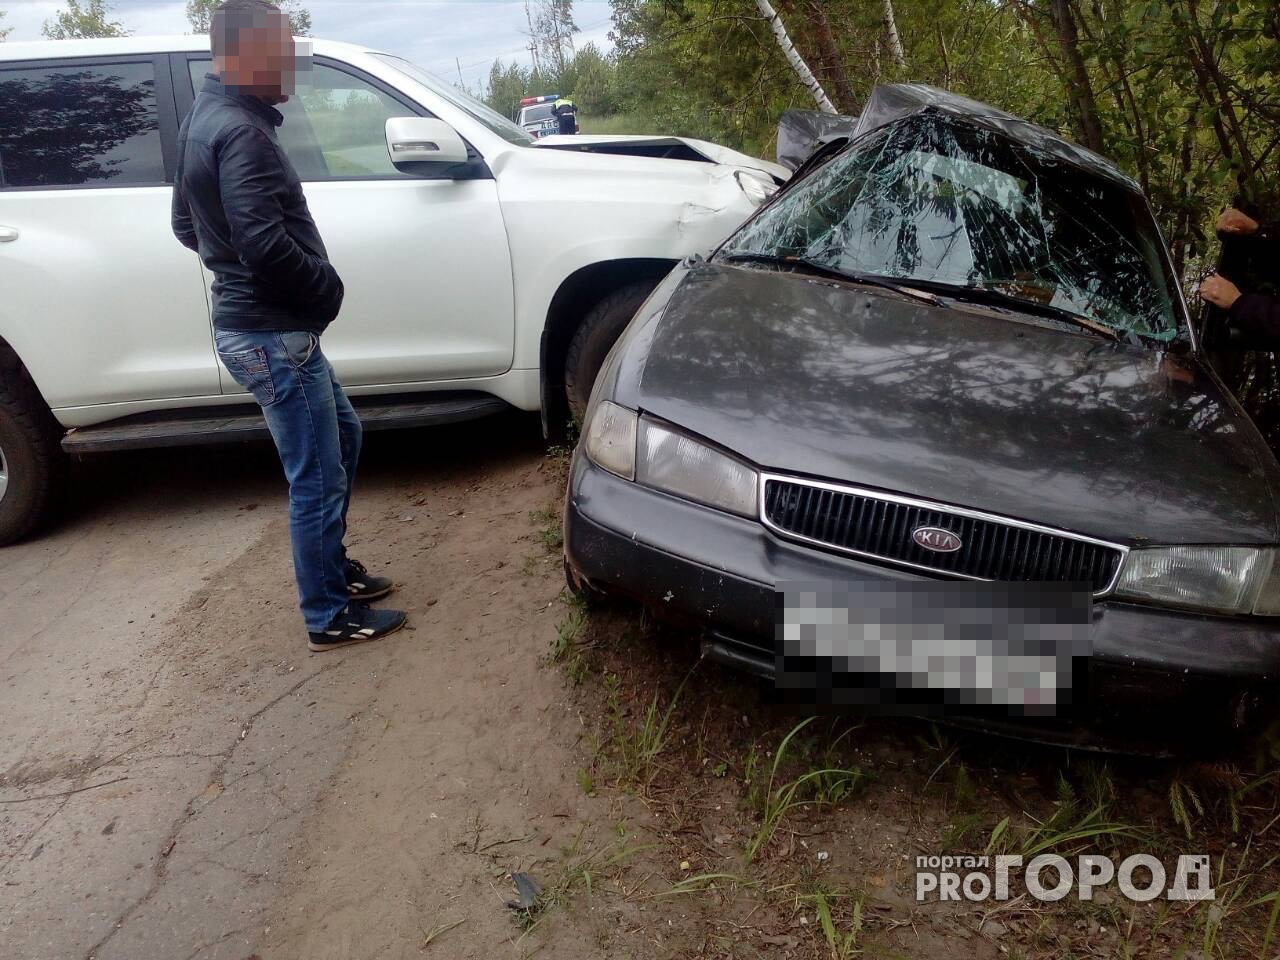 Серьезное ДТП по дороге в Ласково - столкнулись Ланд Крузер и Киа